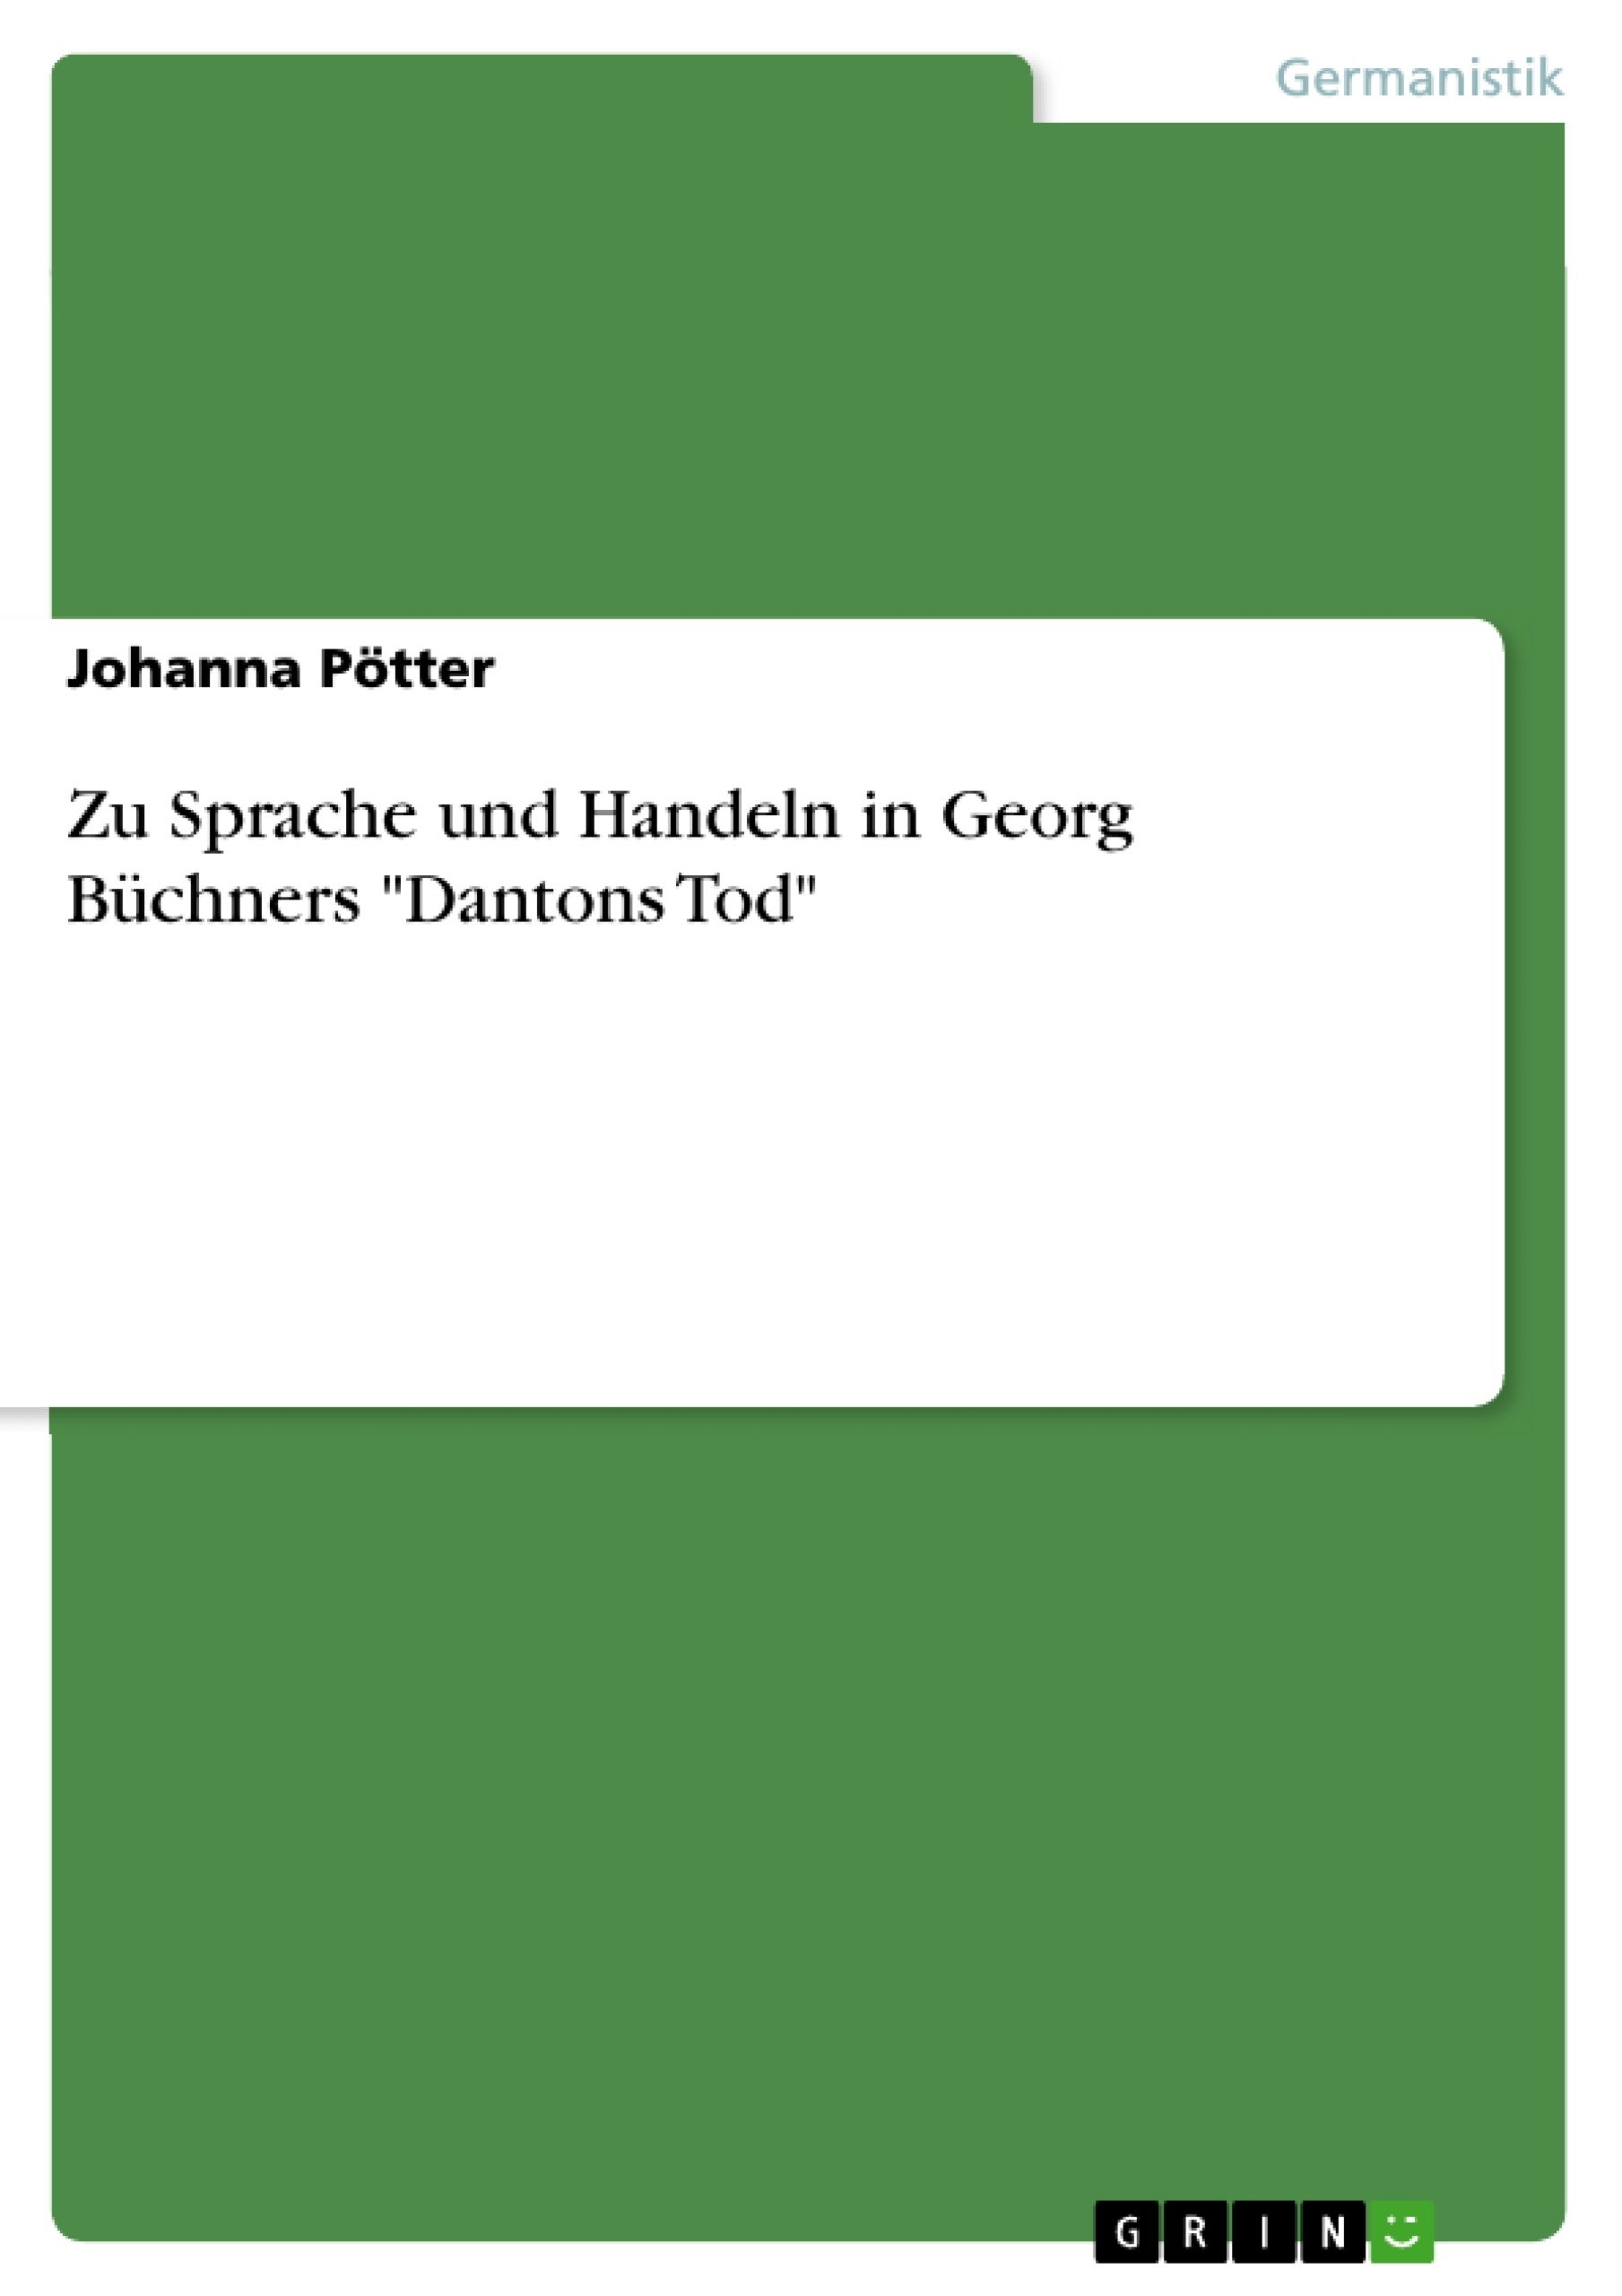 Titel: Zu Sprache und Handeln in Georg Büchners "Dantons Tod"